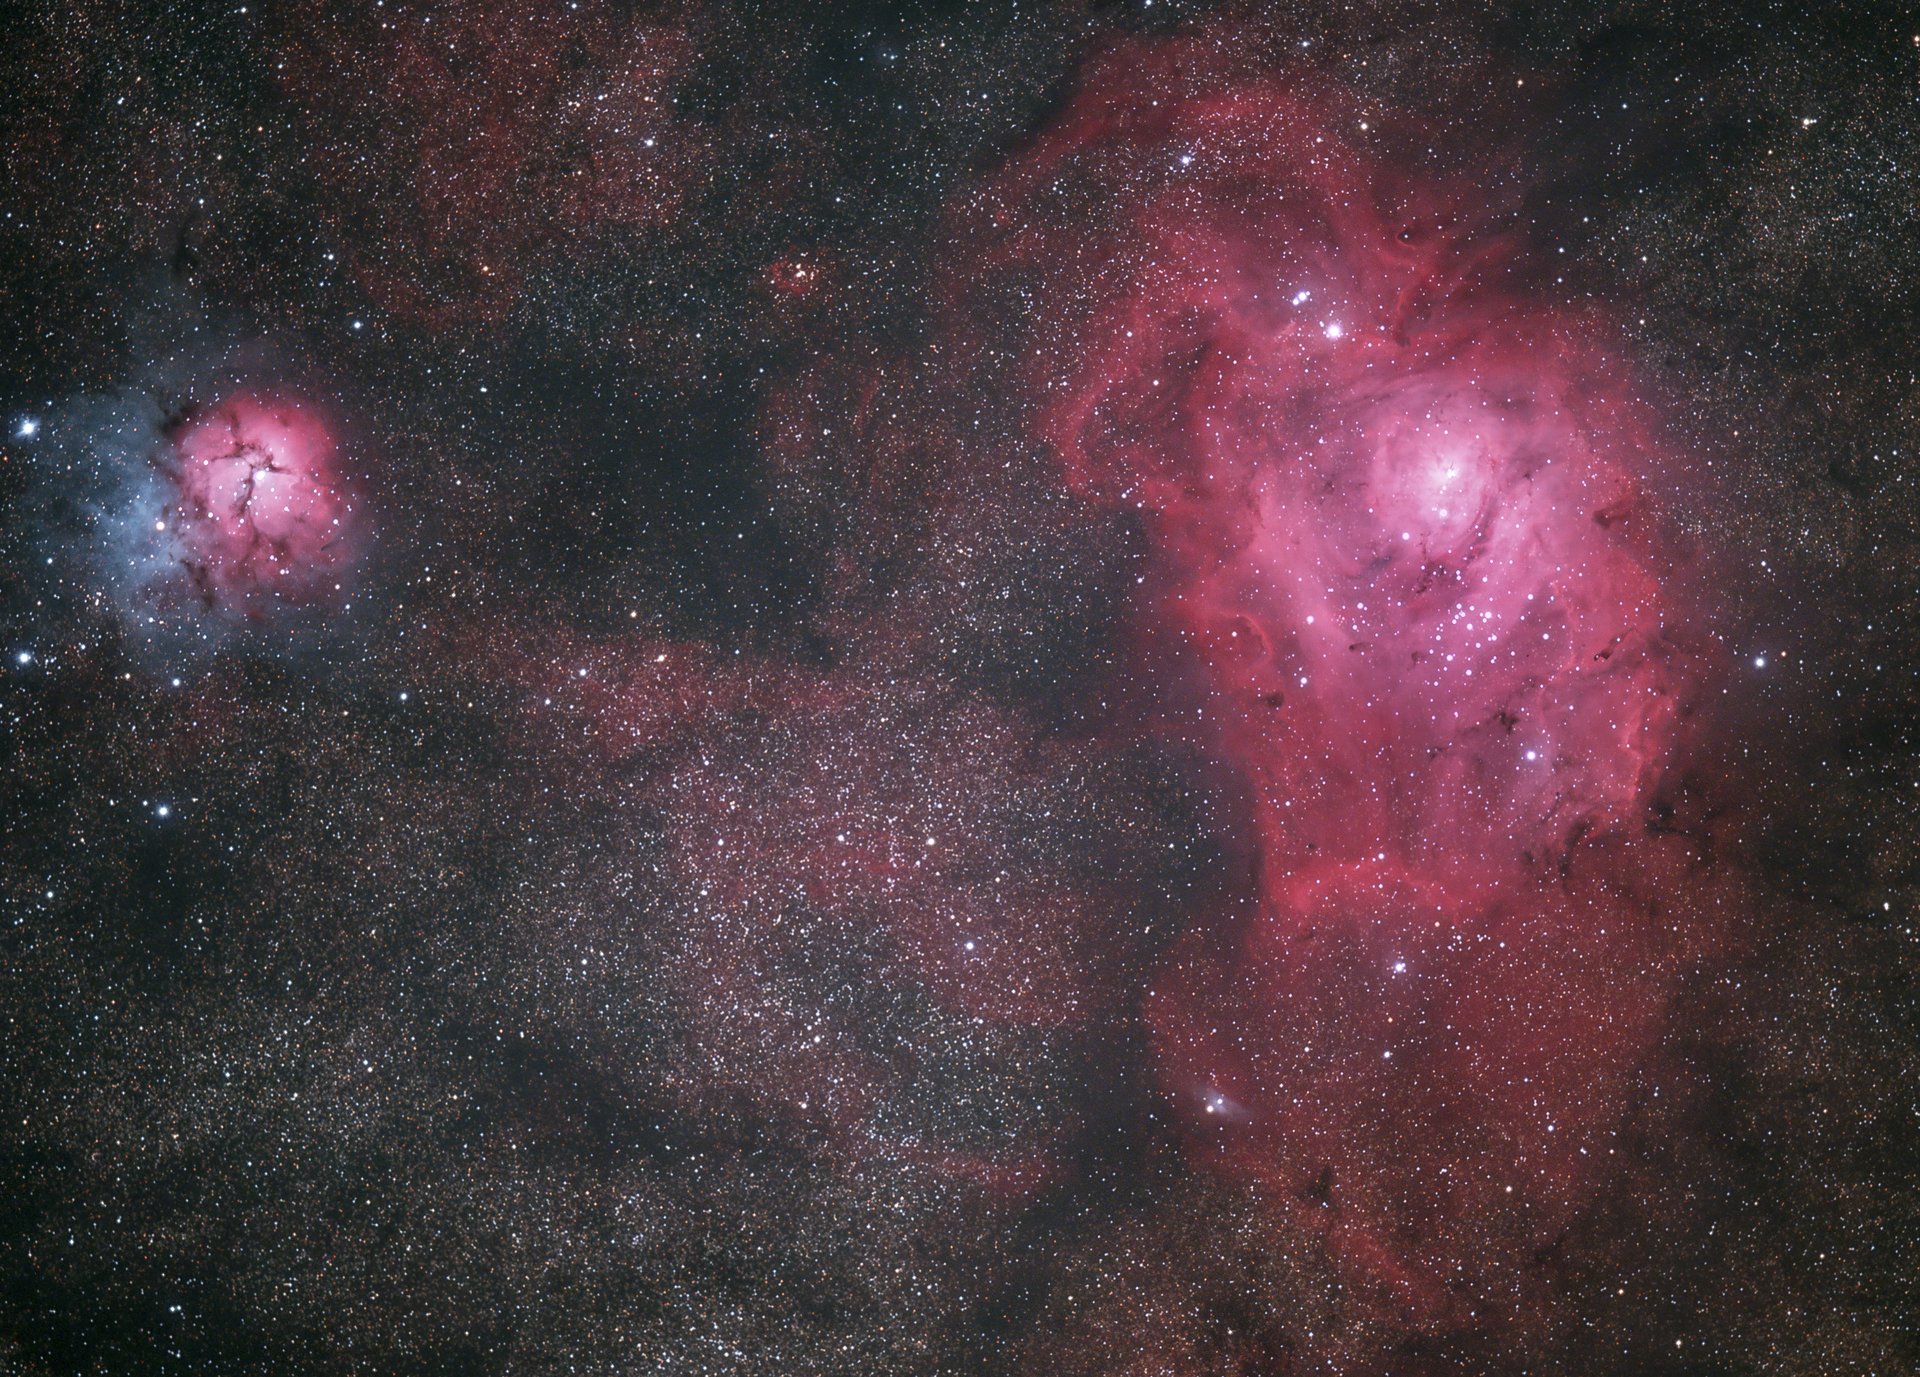 Viele Sterne und Sternnebel, rechts ist eine große rosa Galaxie zu erkennen